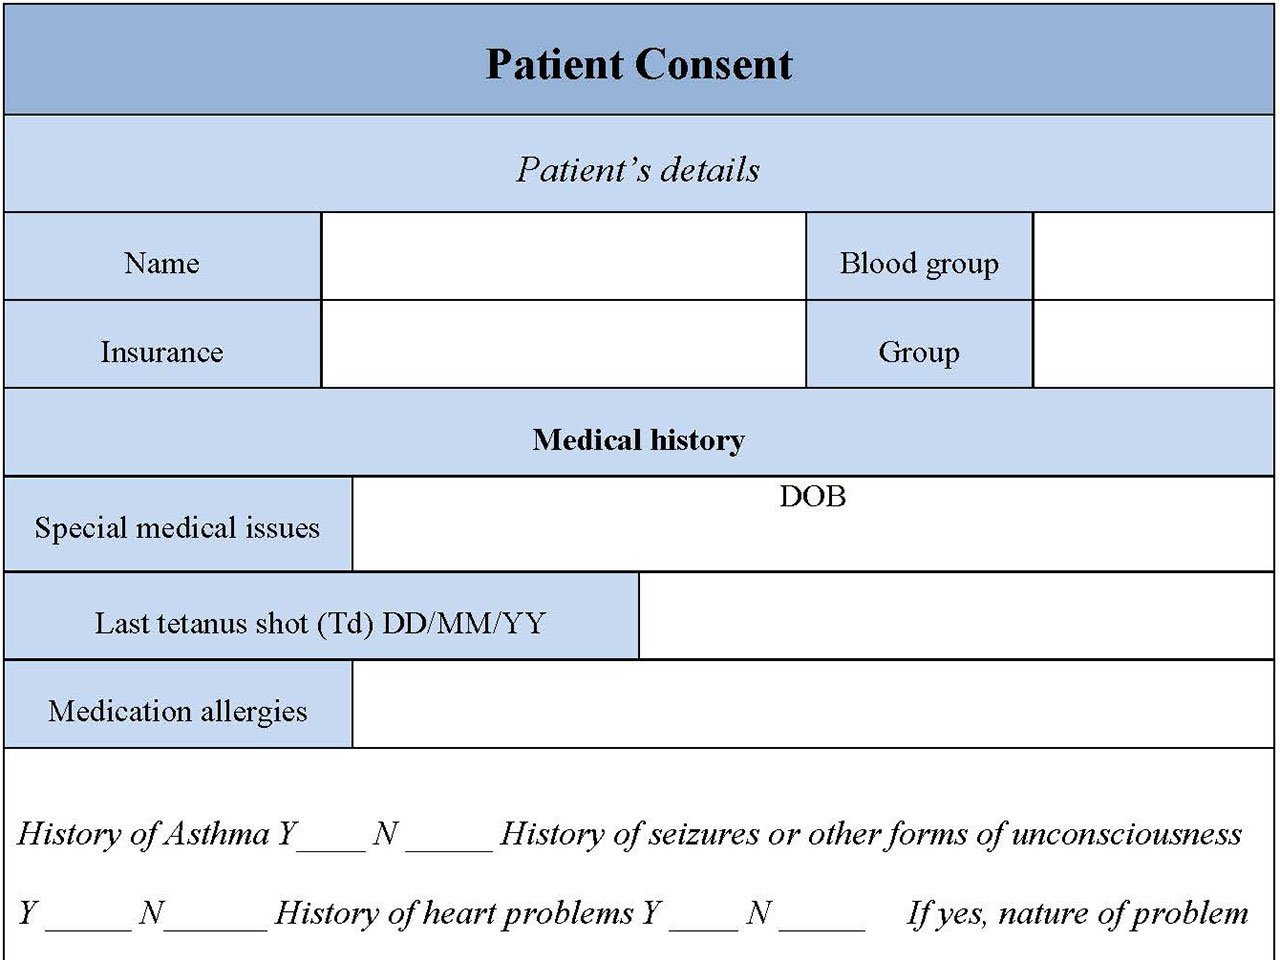 Patient Consent Form